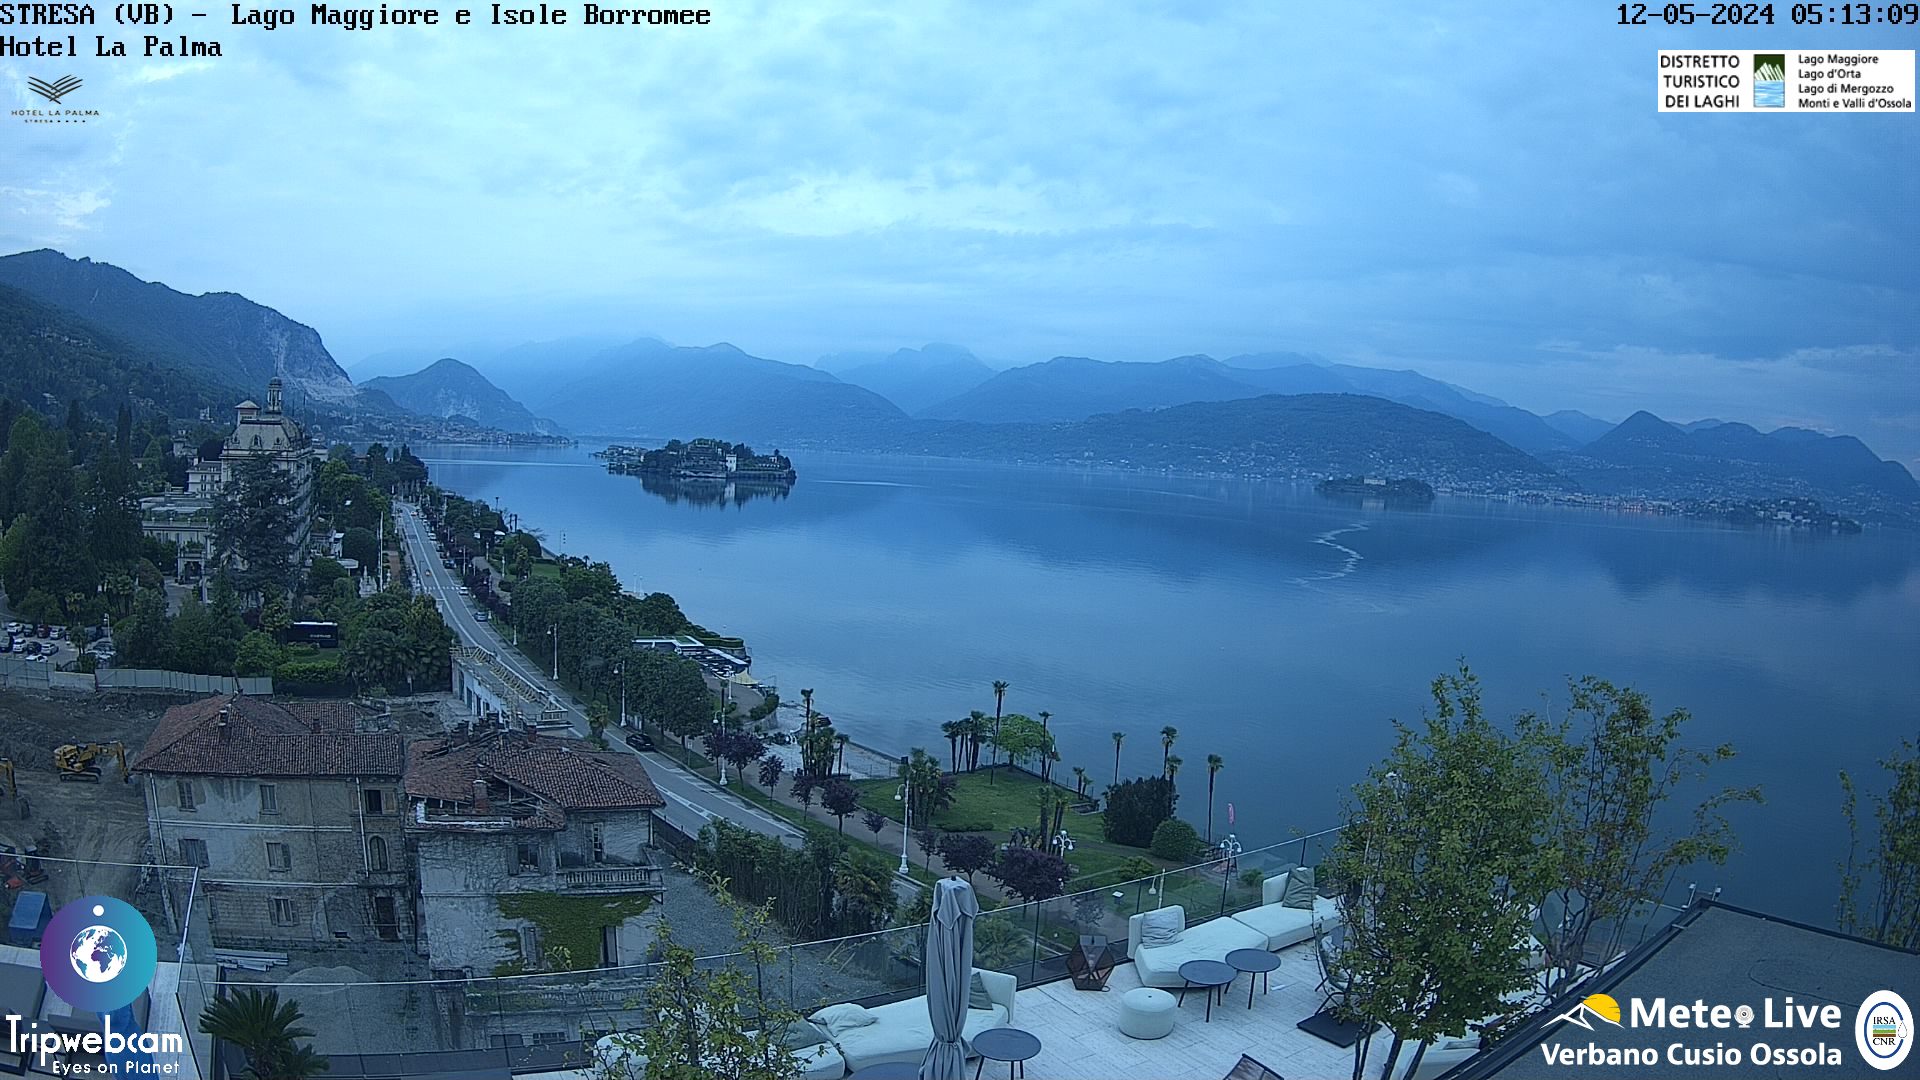 Stresa (Lago Maggiore) Di. 06:18